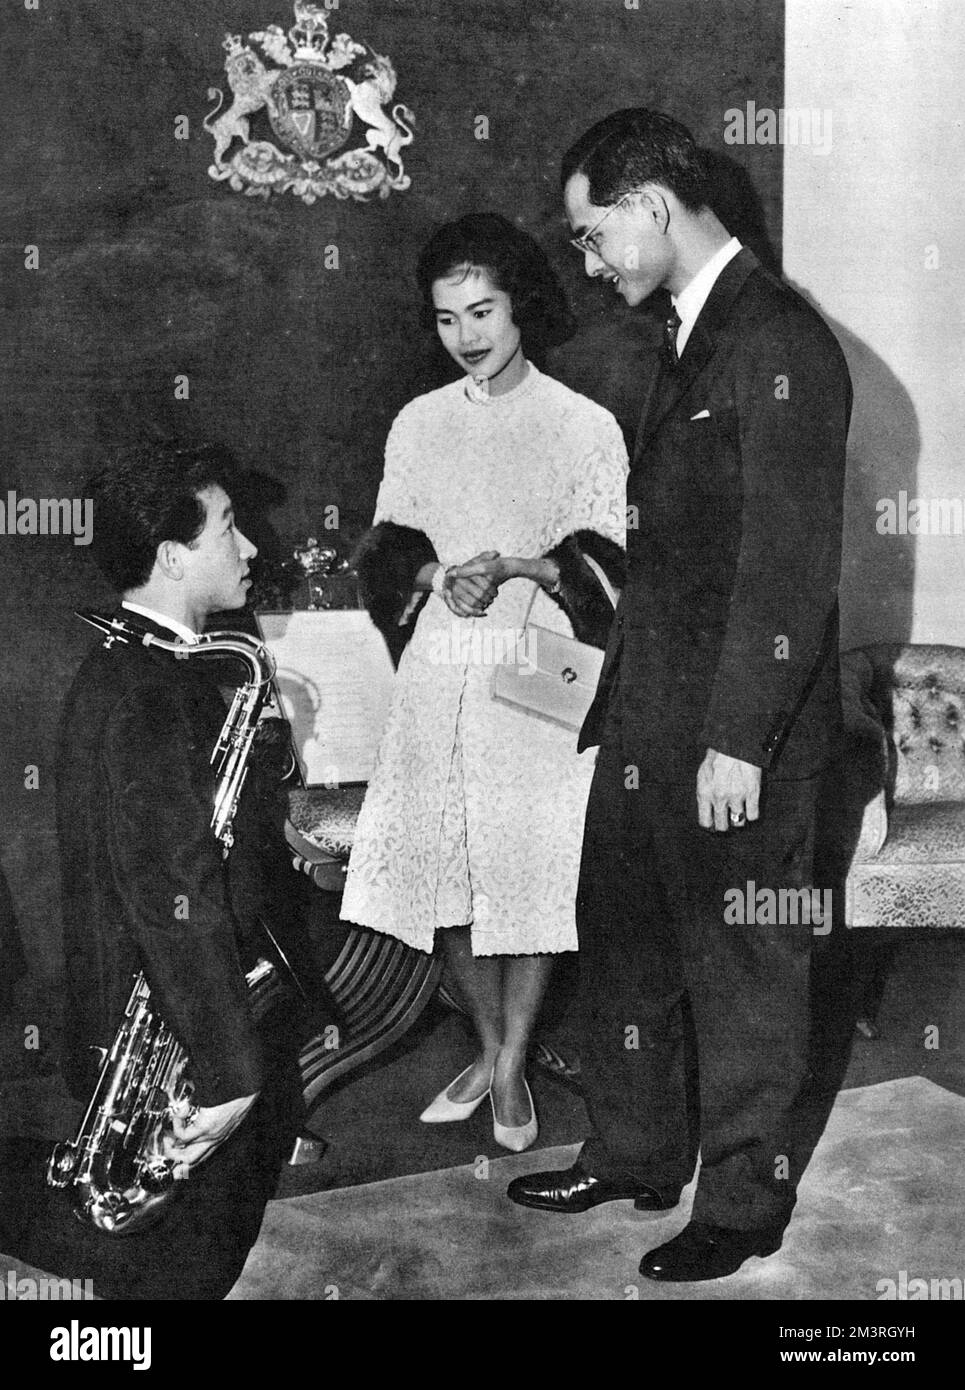 Une visite officielle de l'Australie par le roi Bhumibol Adulyadej (Rama IX) (1927-) et la reine Sirikit (1932-) de Thaïlande. Le couple royal reçoit l'hommage d'un étudiant thaïlandais, M. D. Juejok, à Sydney, en Nouvelle-Galles du Sud. Le Roi, un musicien prend le temps d'avoir une conversation avec le saxophoniste à genoux, qui venait de jouer l'hymne national thaïlandais. Date: 1962 Banque D'Images